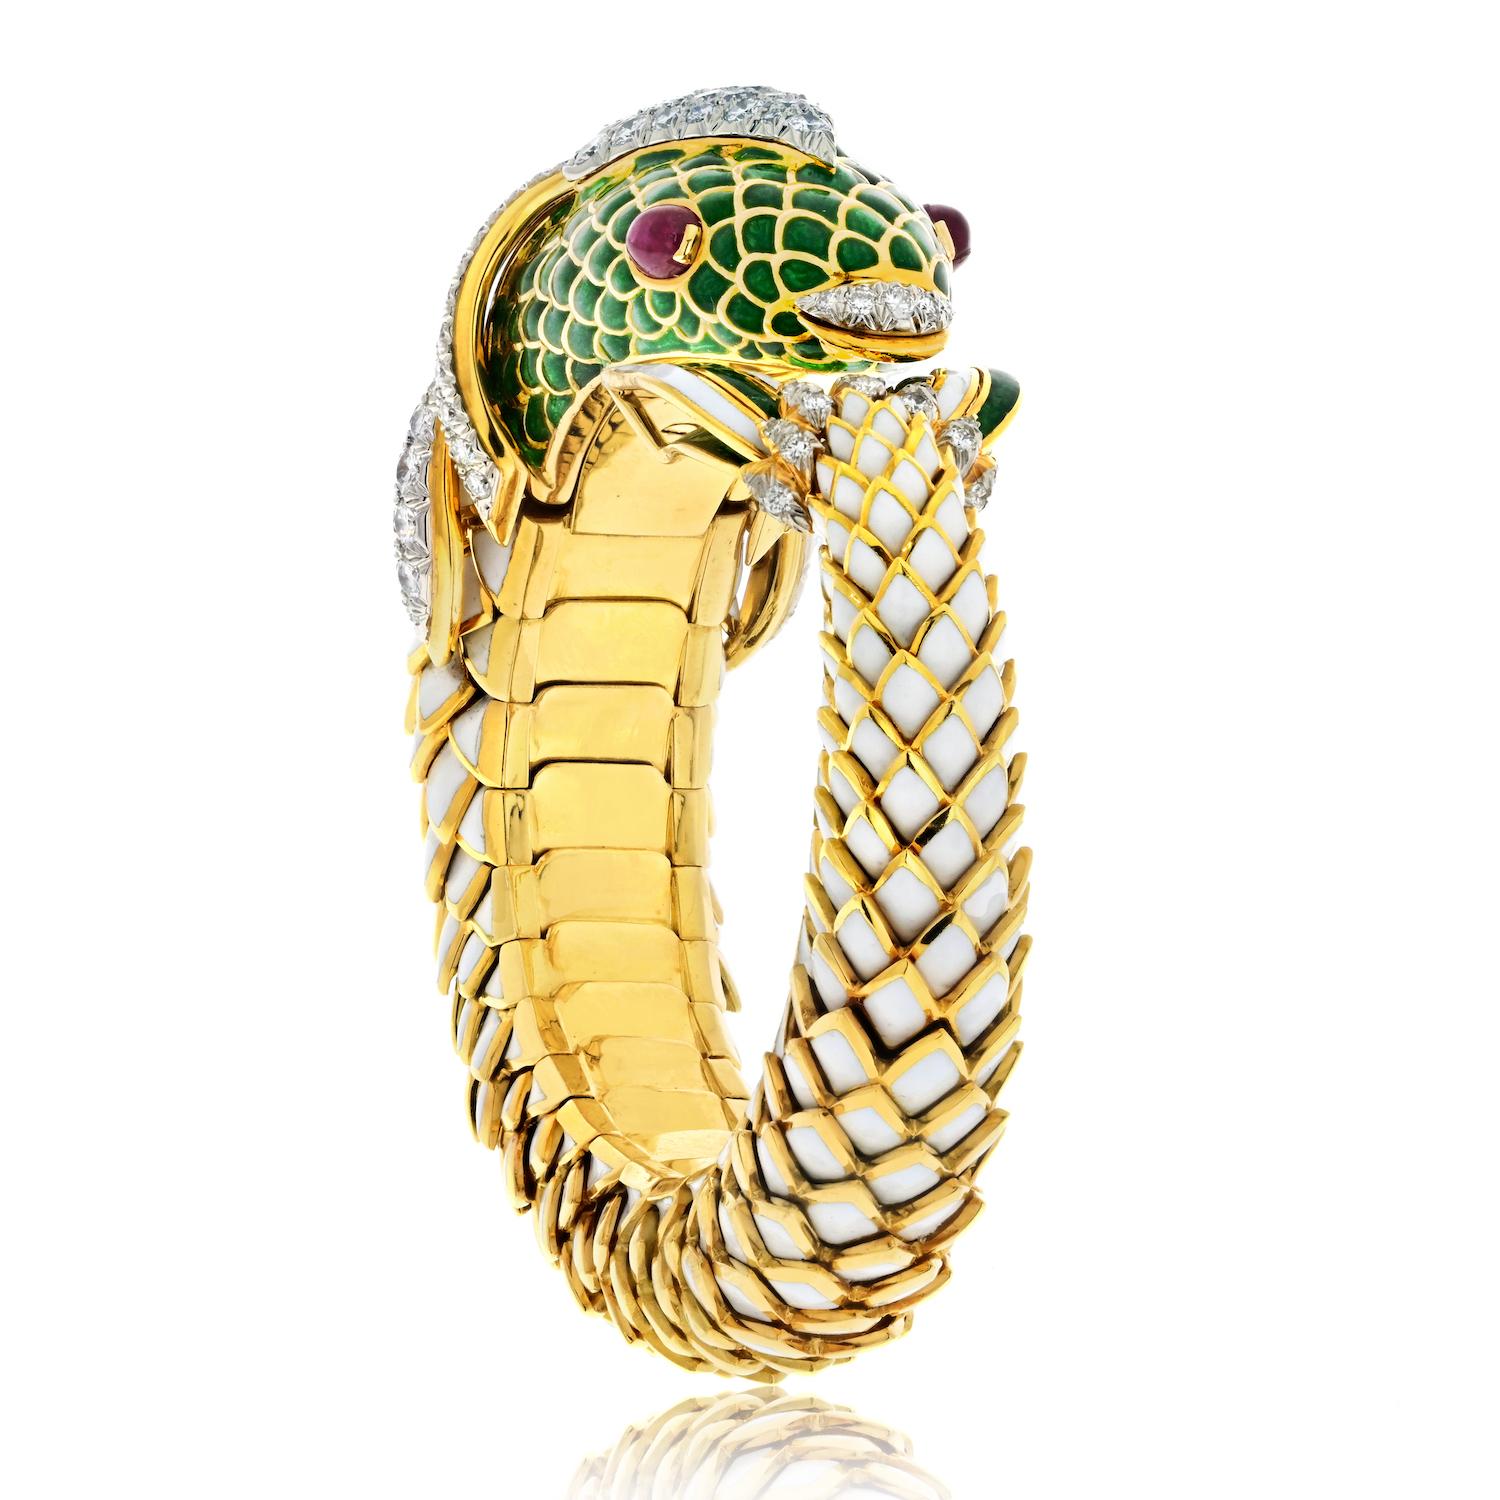 Plongez dans le monde de l'art et de l'artisanat avec cet exceptionnel bracelet de succession conçu par le célèbre David Webb. Façonné sous la forme d'un gracieux poisson KOI, ce chef-d'œuvre transcende la conception traditionnelle des bijoux.

Le